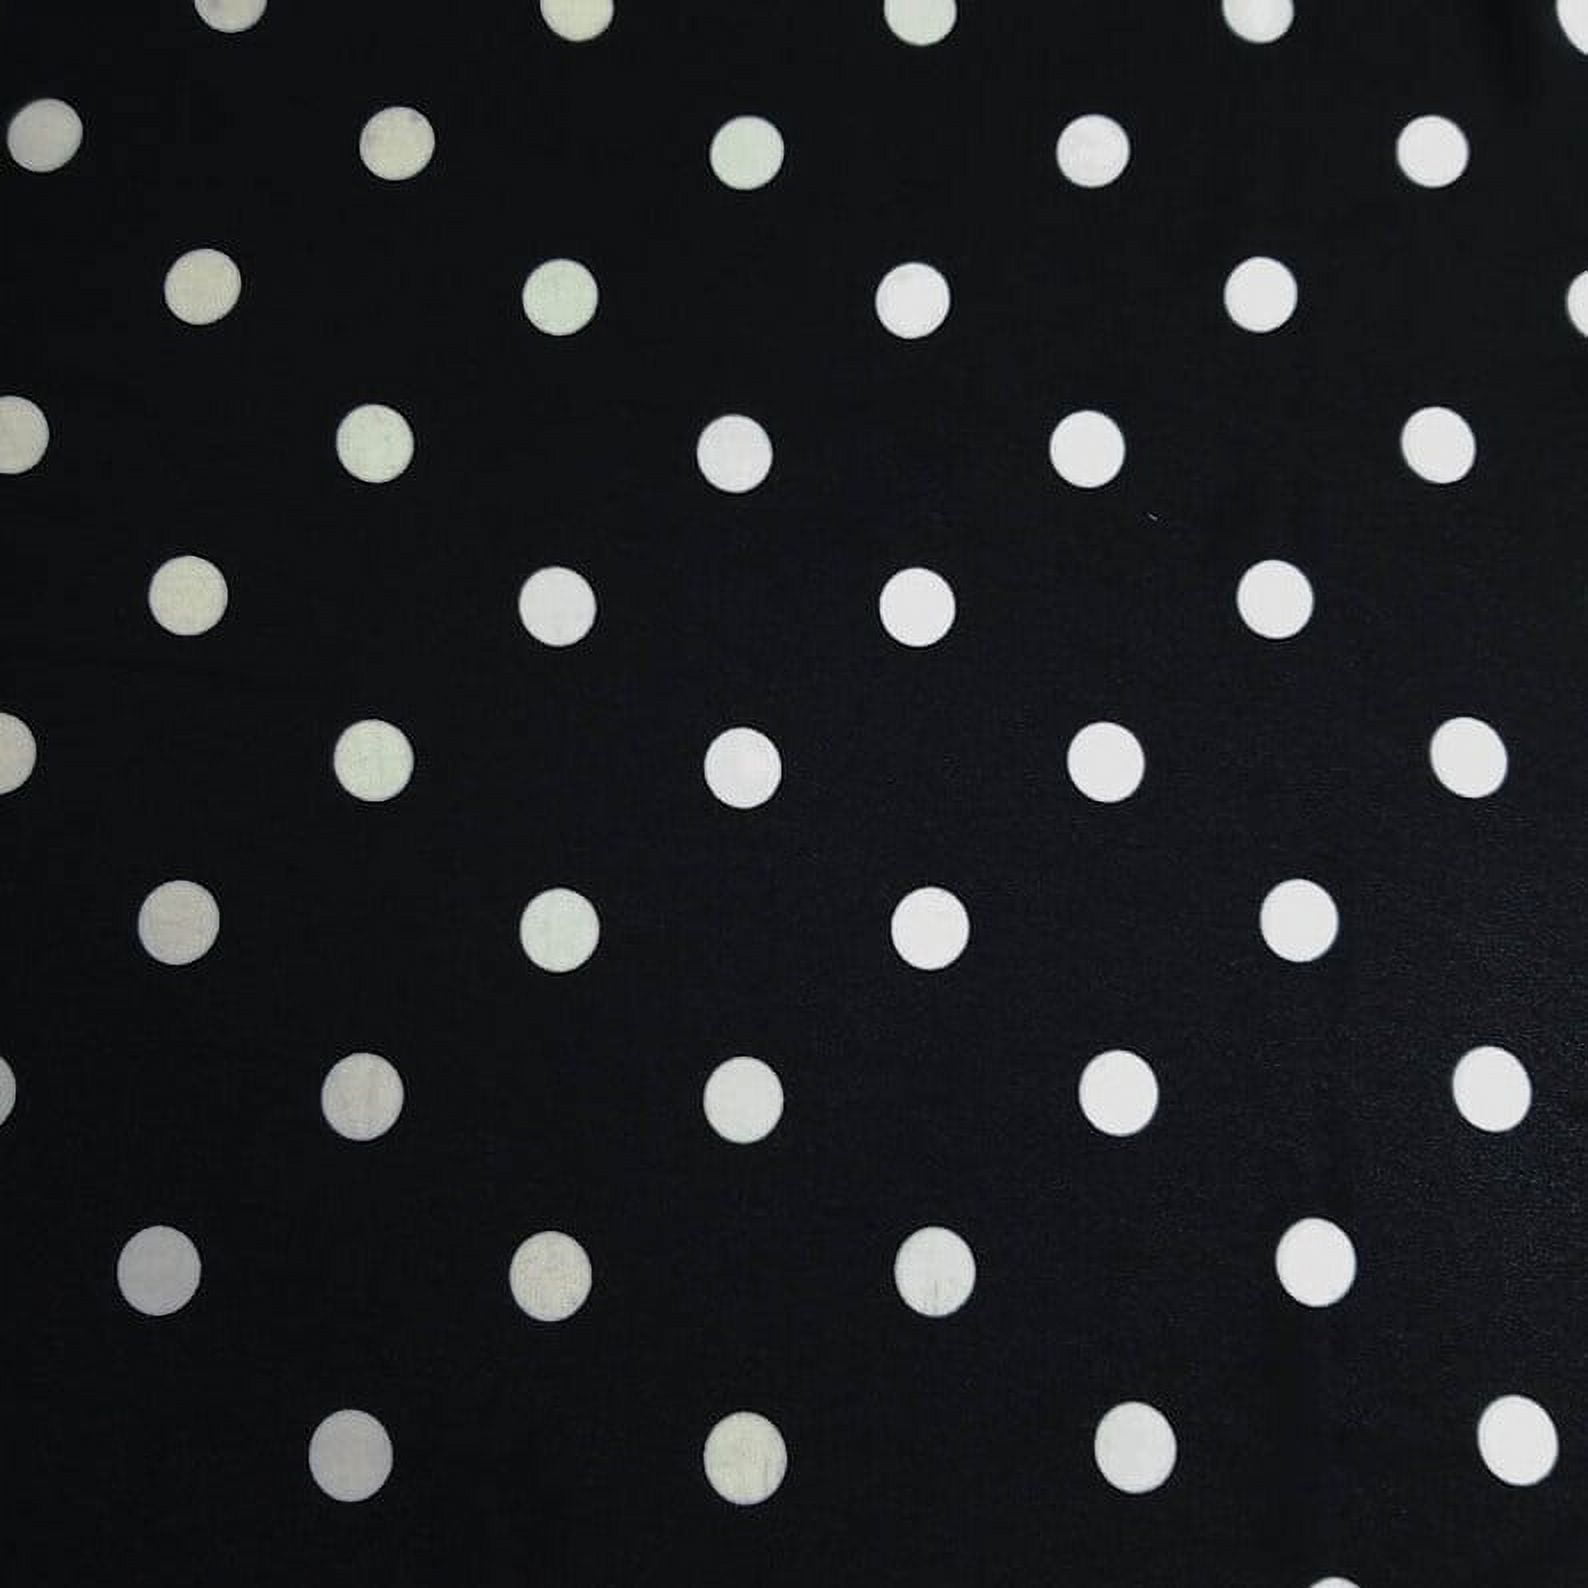 Solid Stretch (9 oz) Denim Fabric - Black Cotton Polyester Spandex Twill  54/55 By The Yard